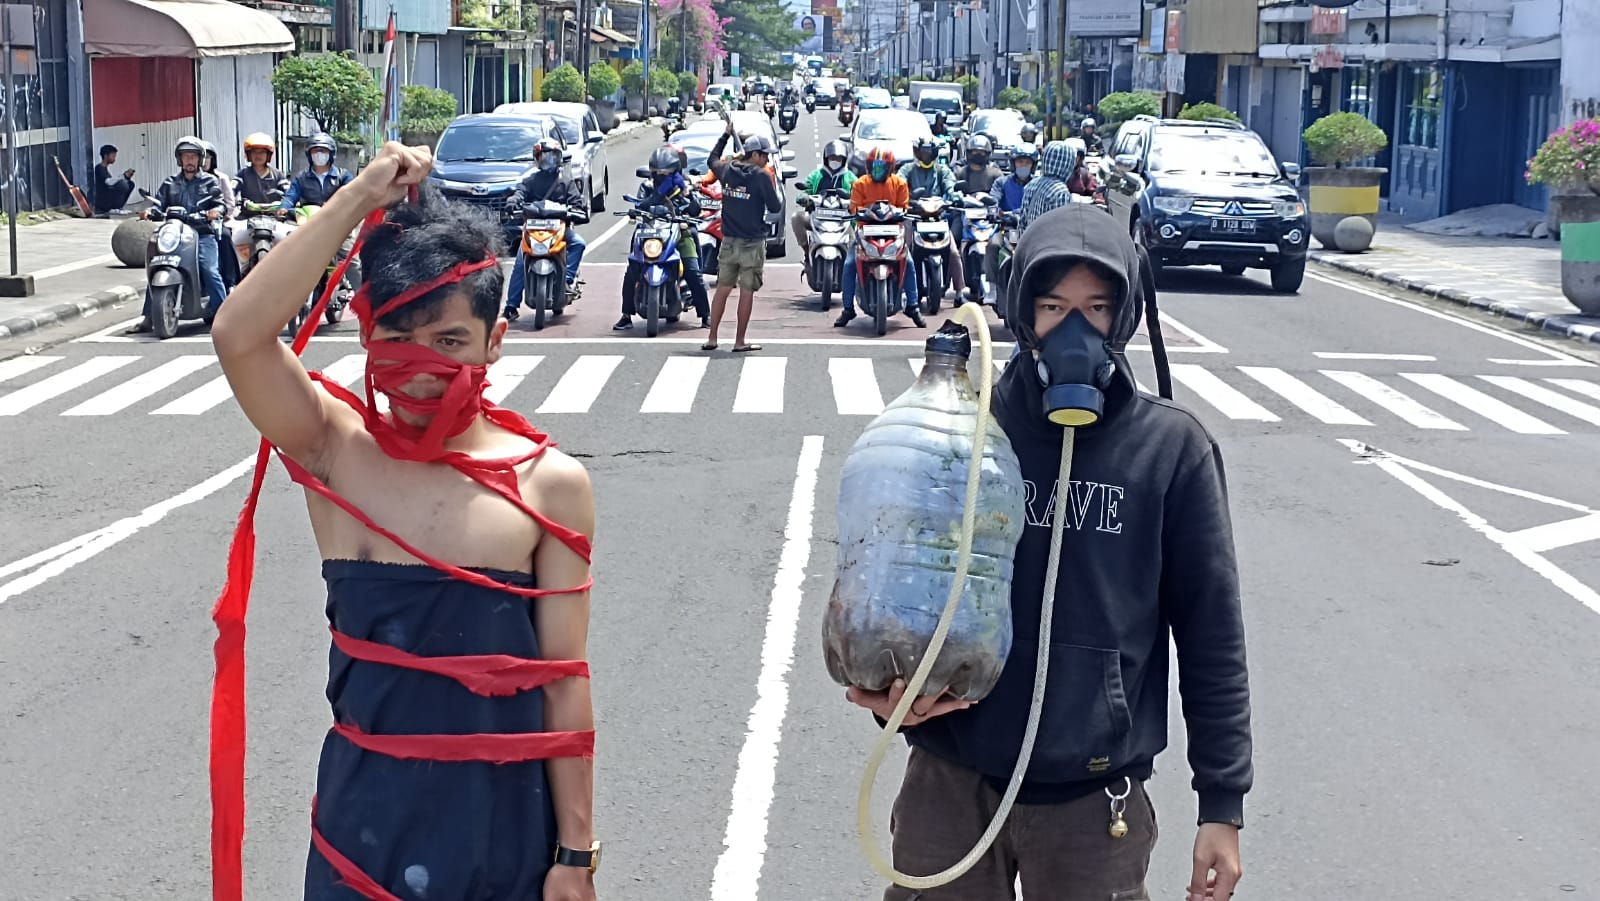 Aksi teatrikal masyarakat Kota Bandung dalam mengkritisi kinerja pemerintah yang dinilai tak becus tangani lingkungan. (YANUAR/JABAR EKSPRES)